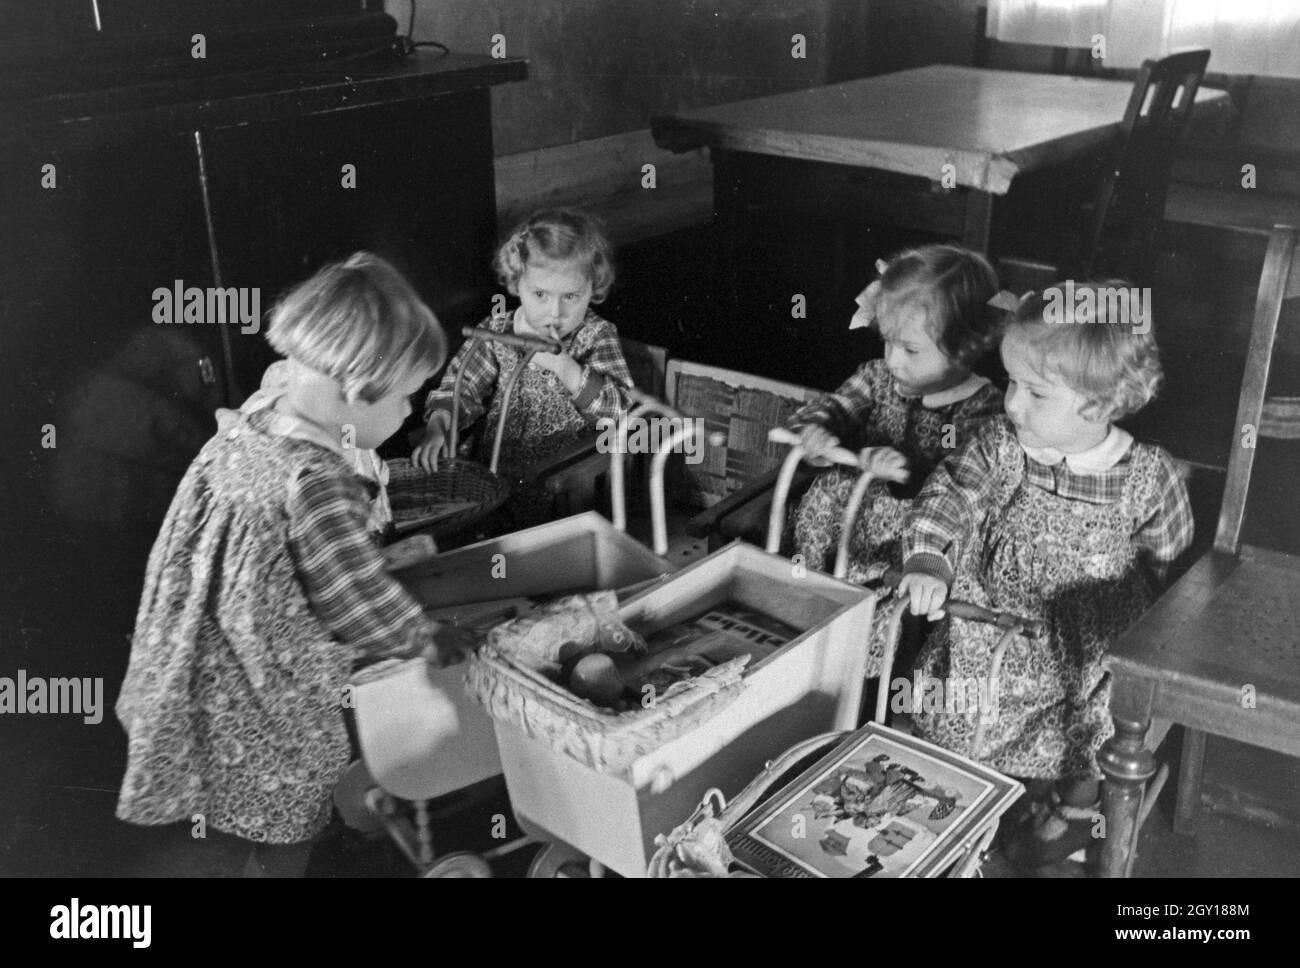 Die Knipser Vierlinge als Kleinkinder mit ihren Puppenwagen, Deutschland 1930er Jahre. Knipser's quadruplet girls with their doll's prams, Germany 1930s. Stock Photo